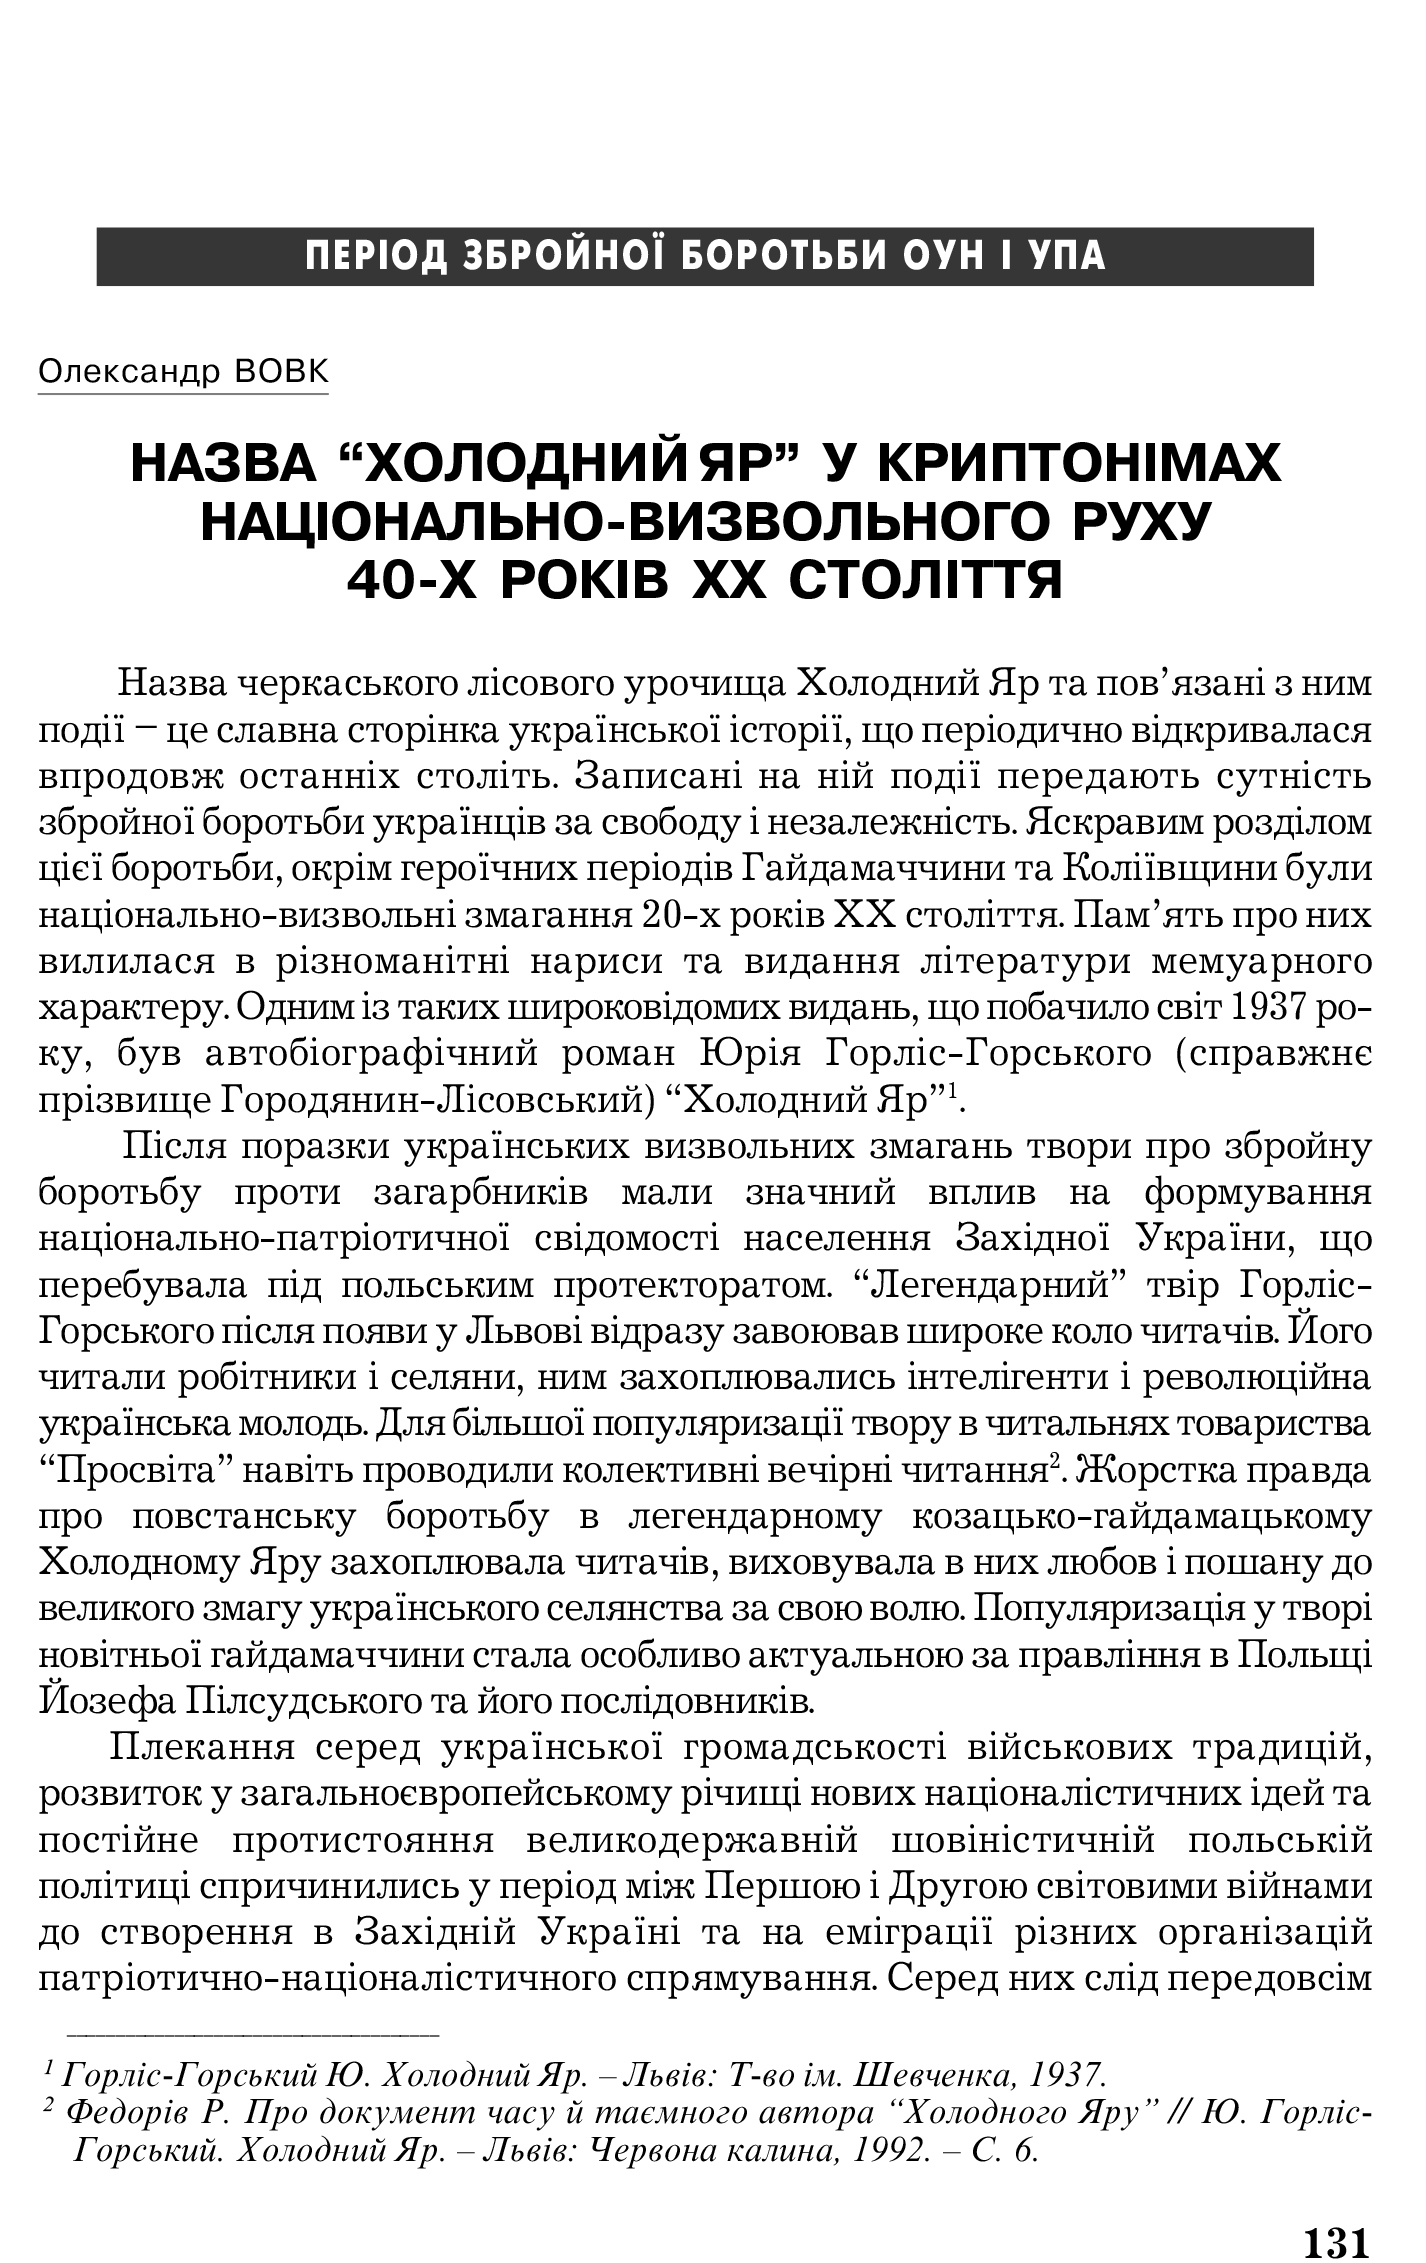 Український визвольний рух №5, ст. 131 - 134